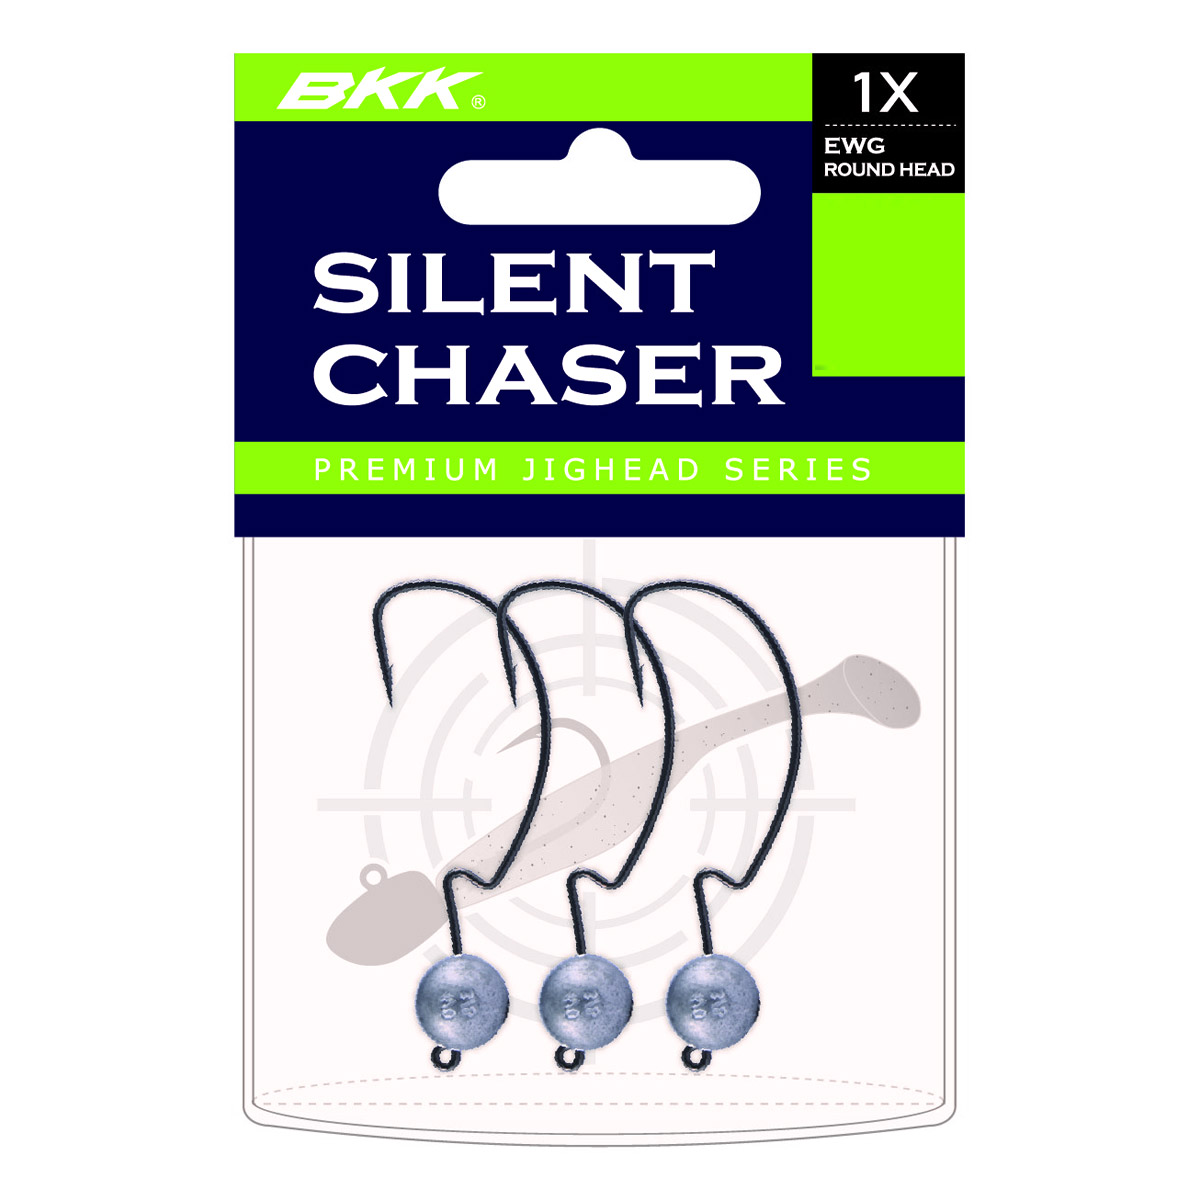 BKK Silent Chaser EWG 1X Round Head Size 1